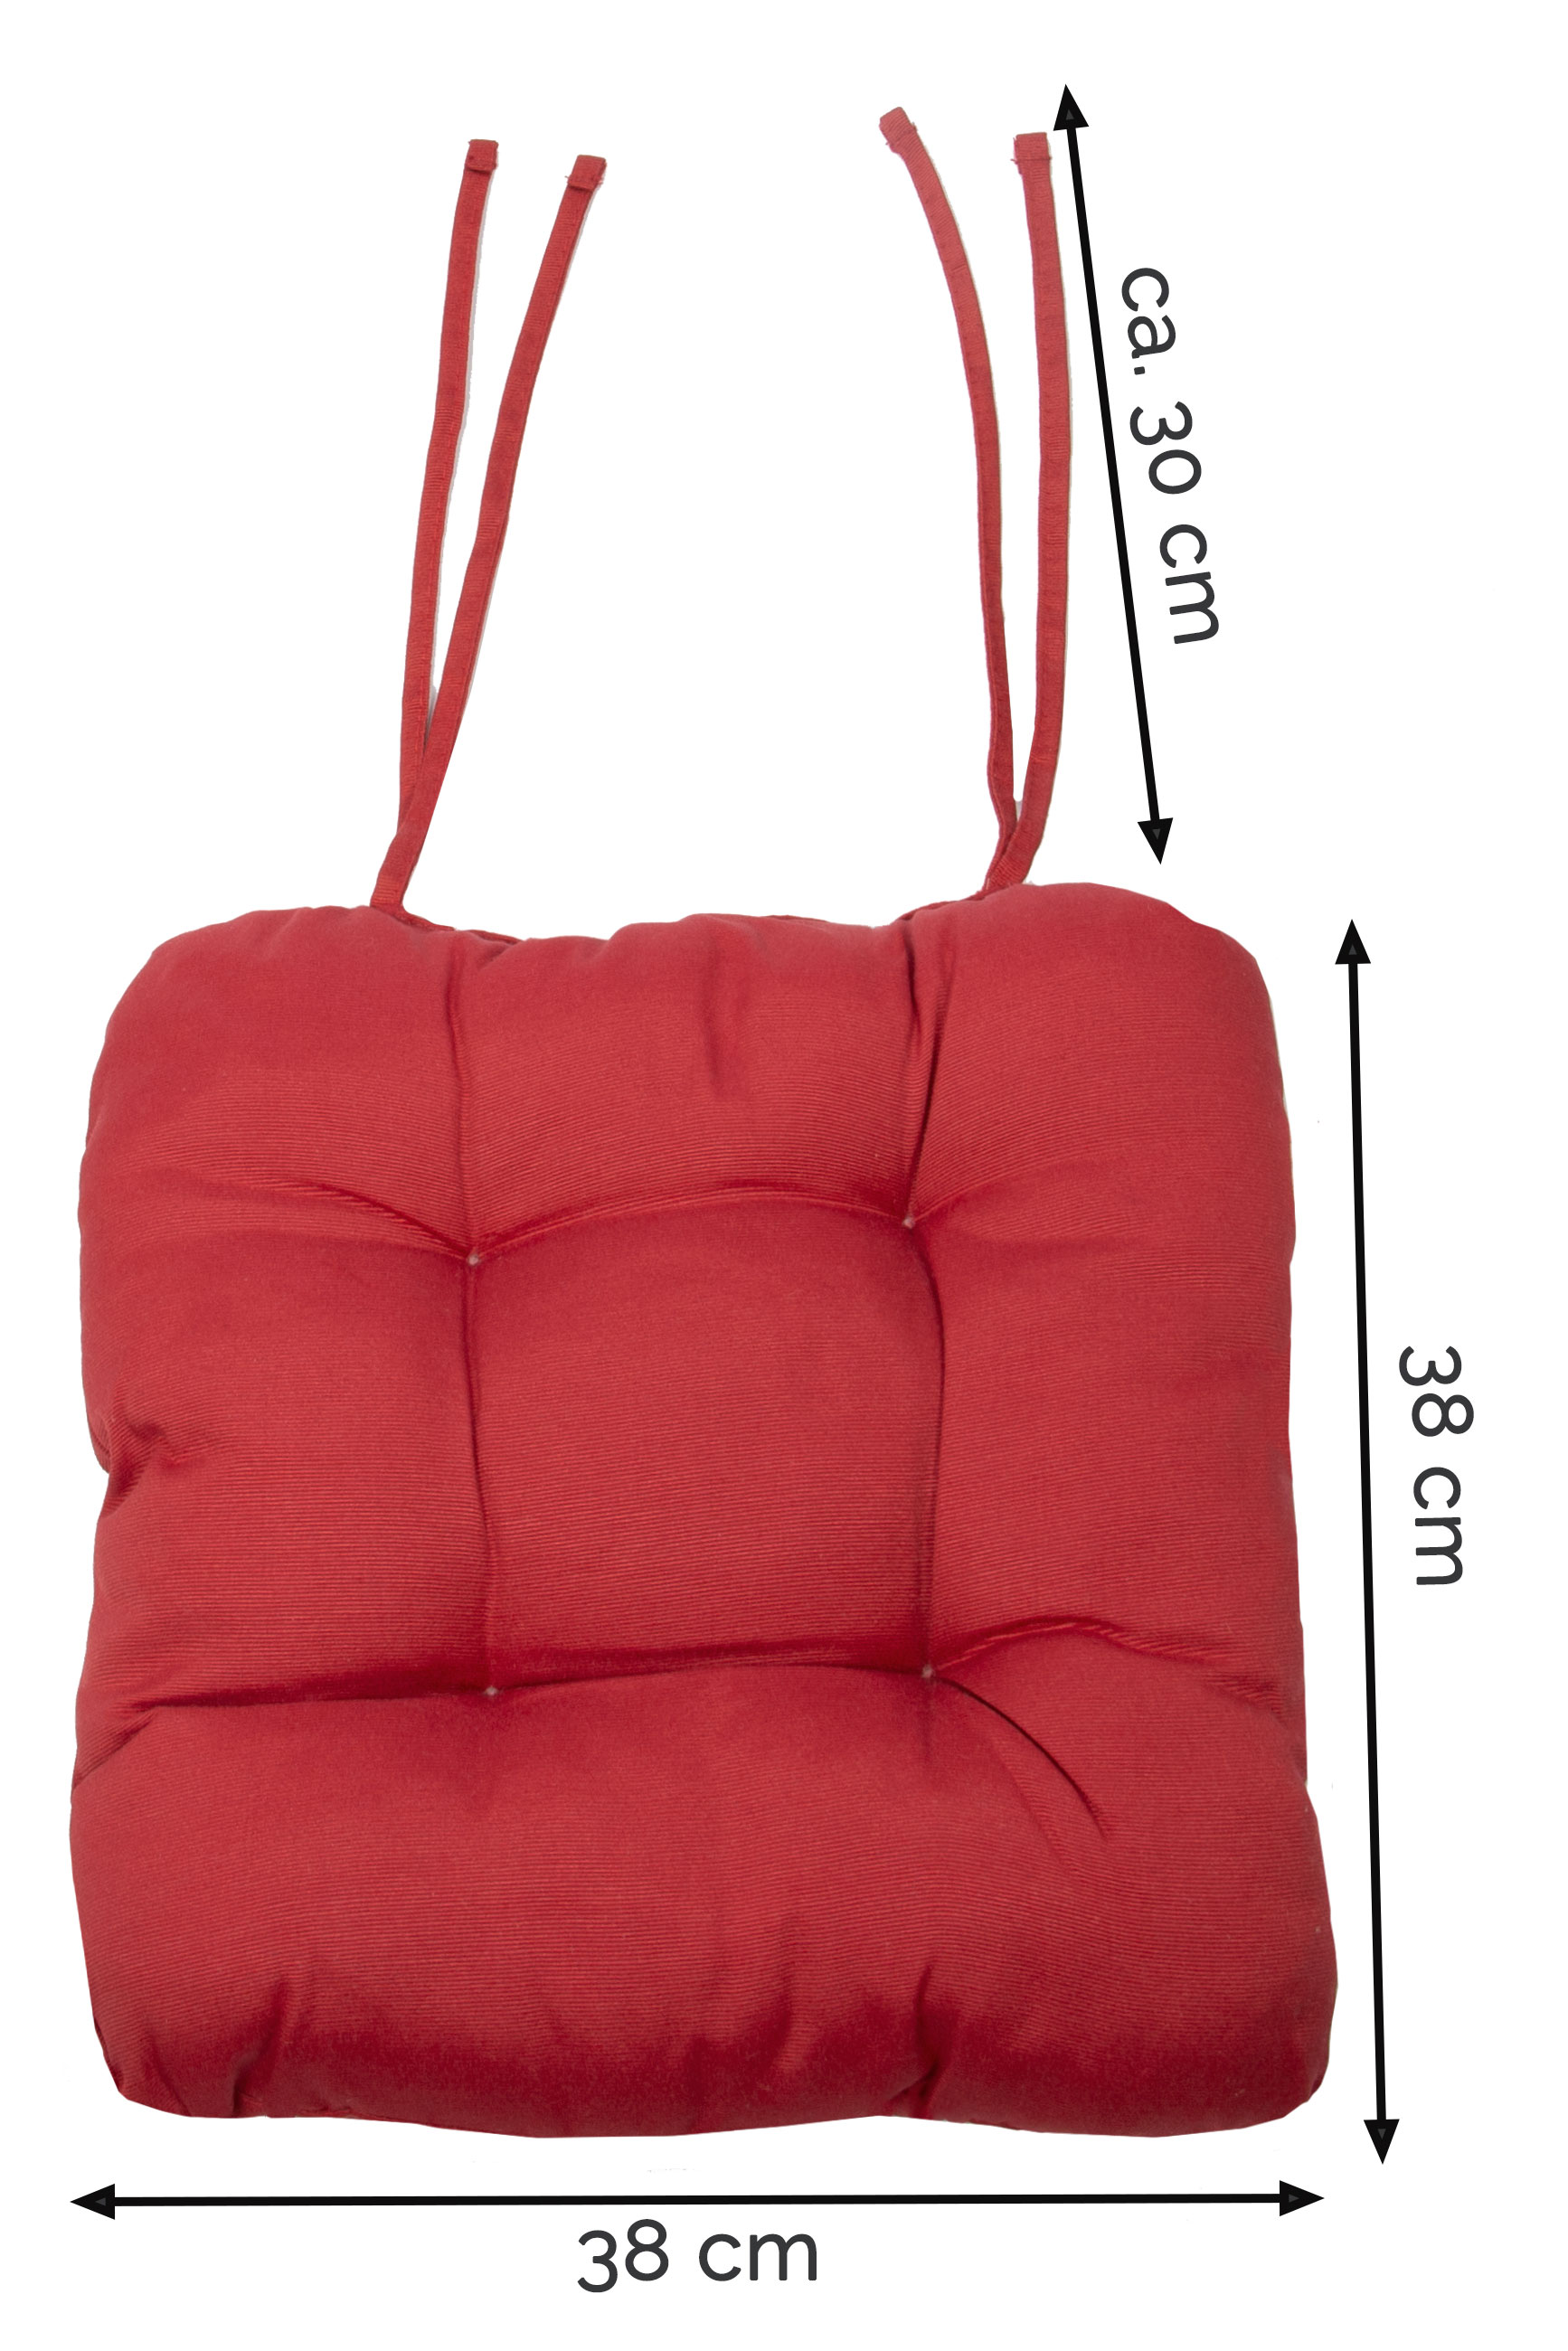 4er Set Stuhlkissen Sitzkissen Stuhlauflage mit Bänder 38x38 cm